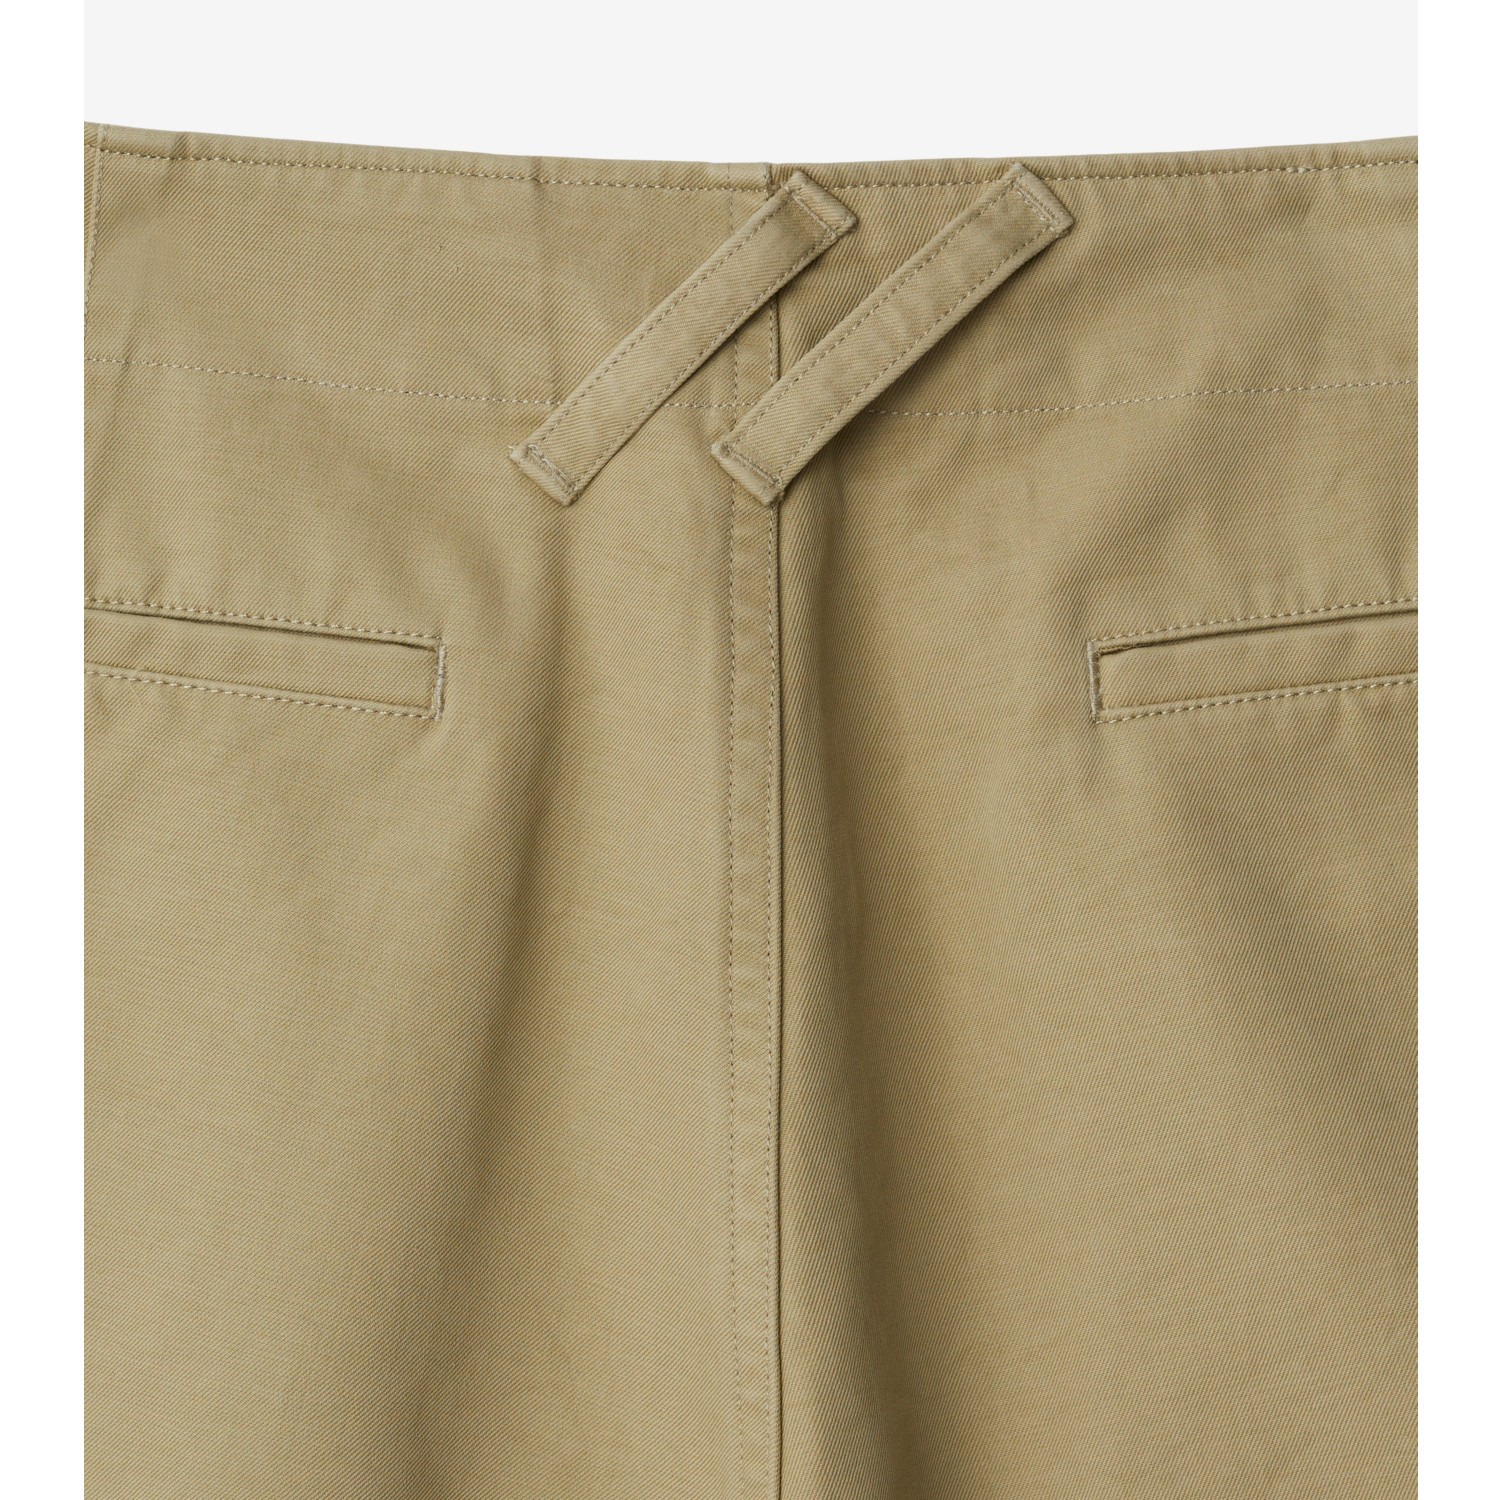 Pantalones cortos en algodón